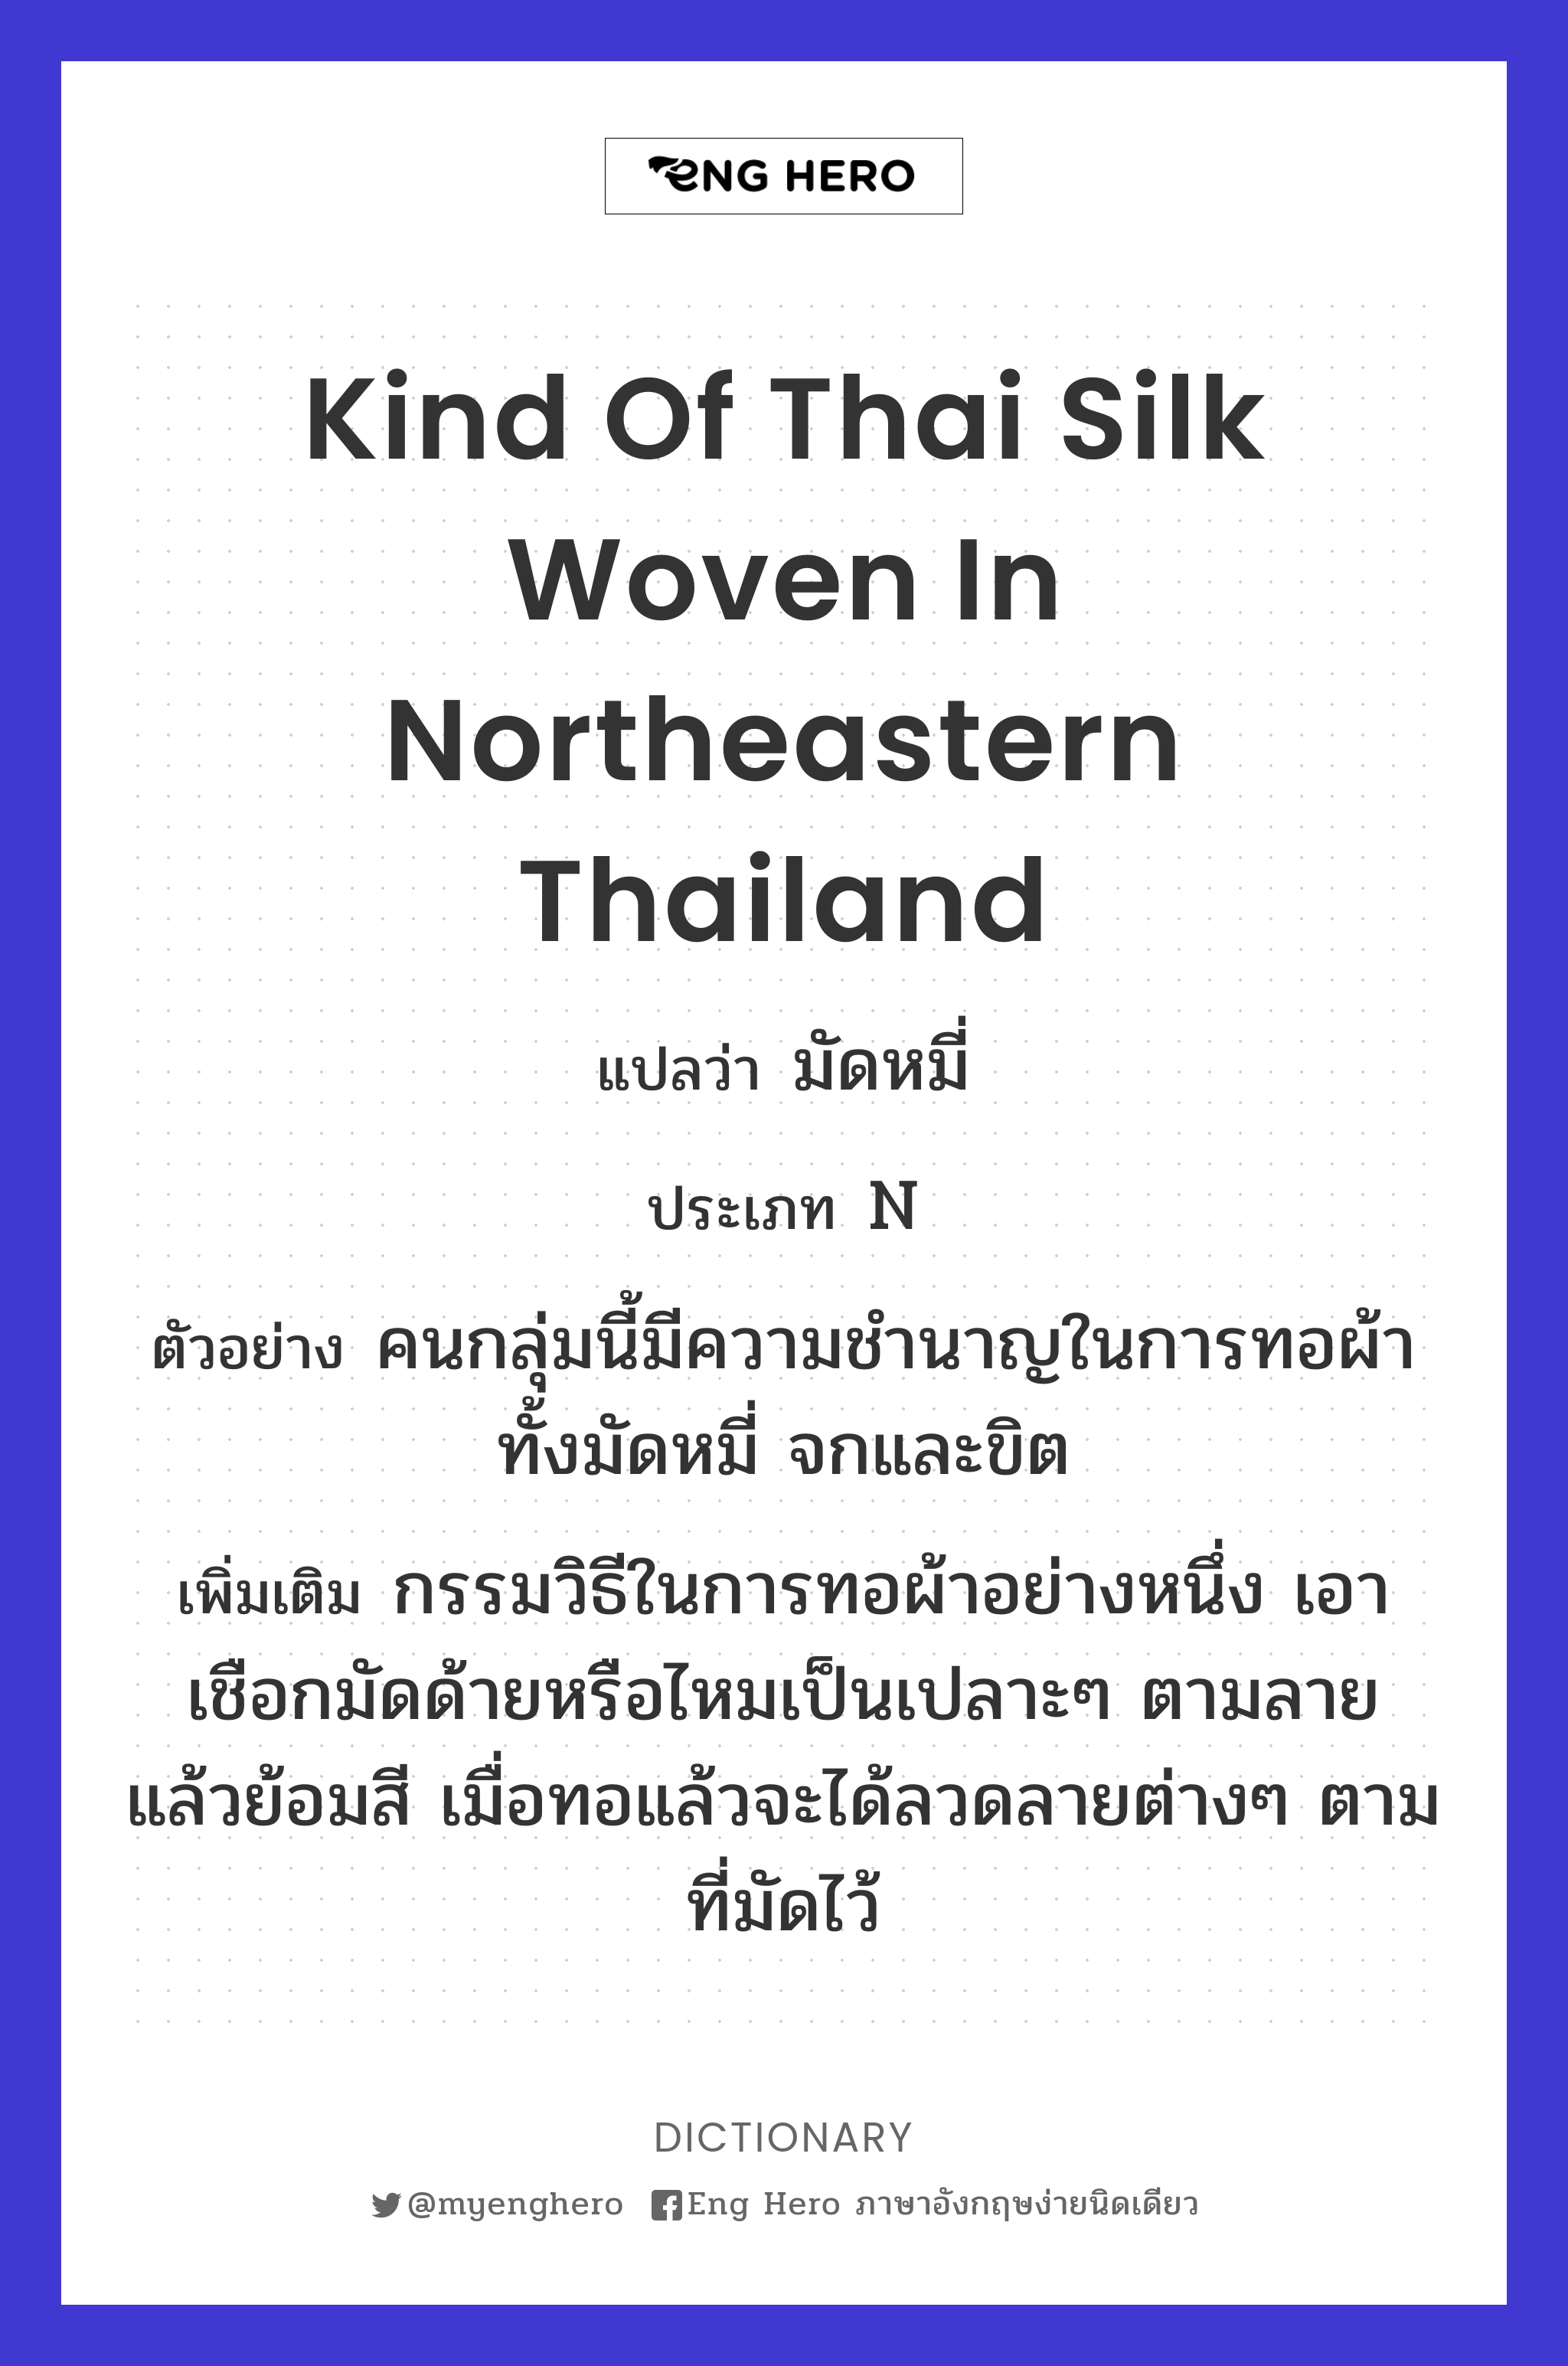 kind of Thai silk woven in northeastern Thailand